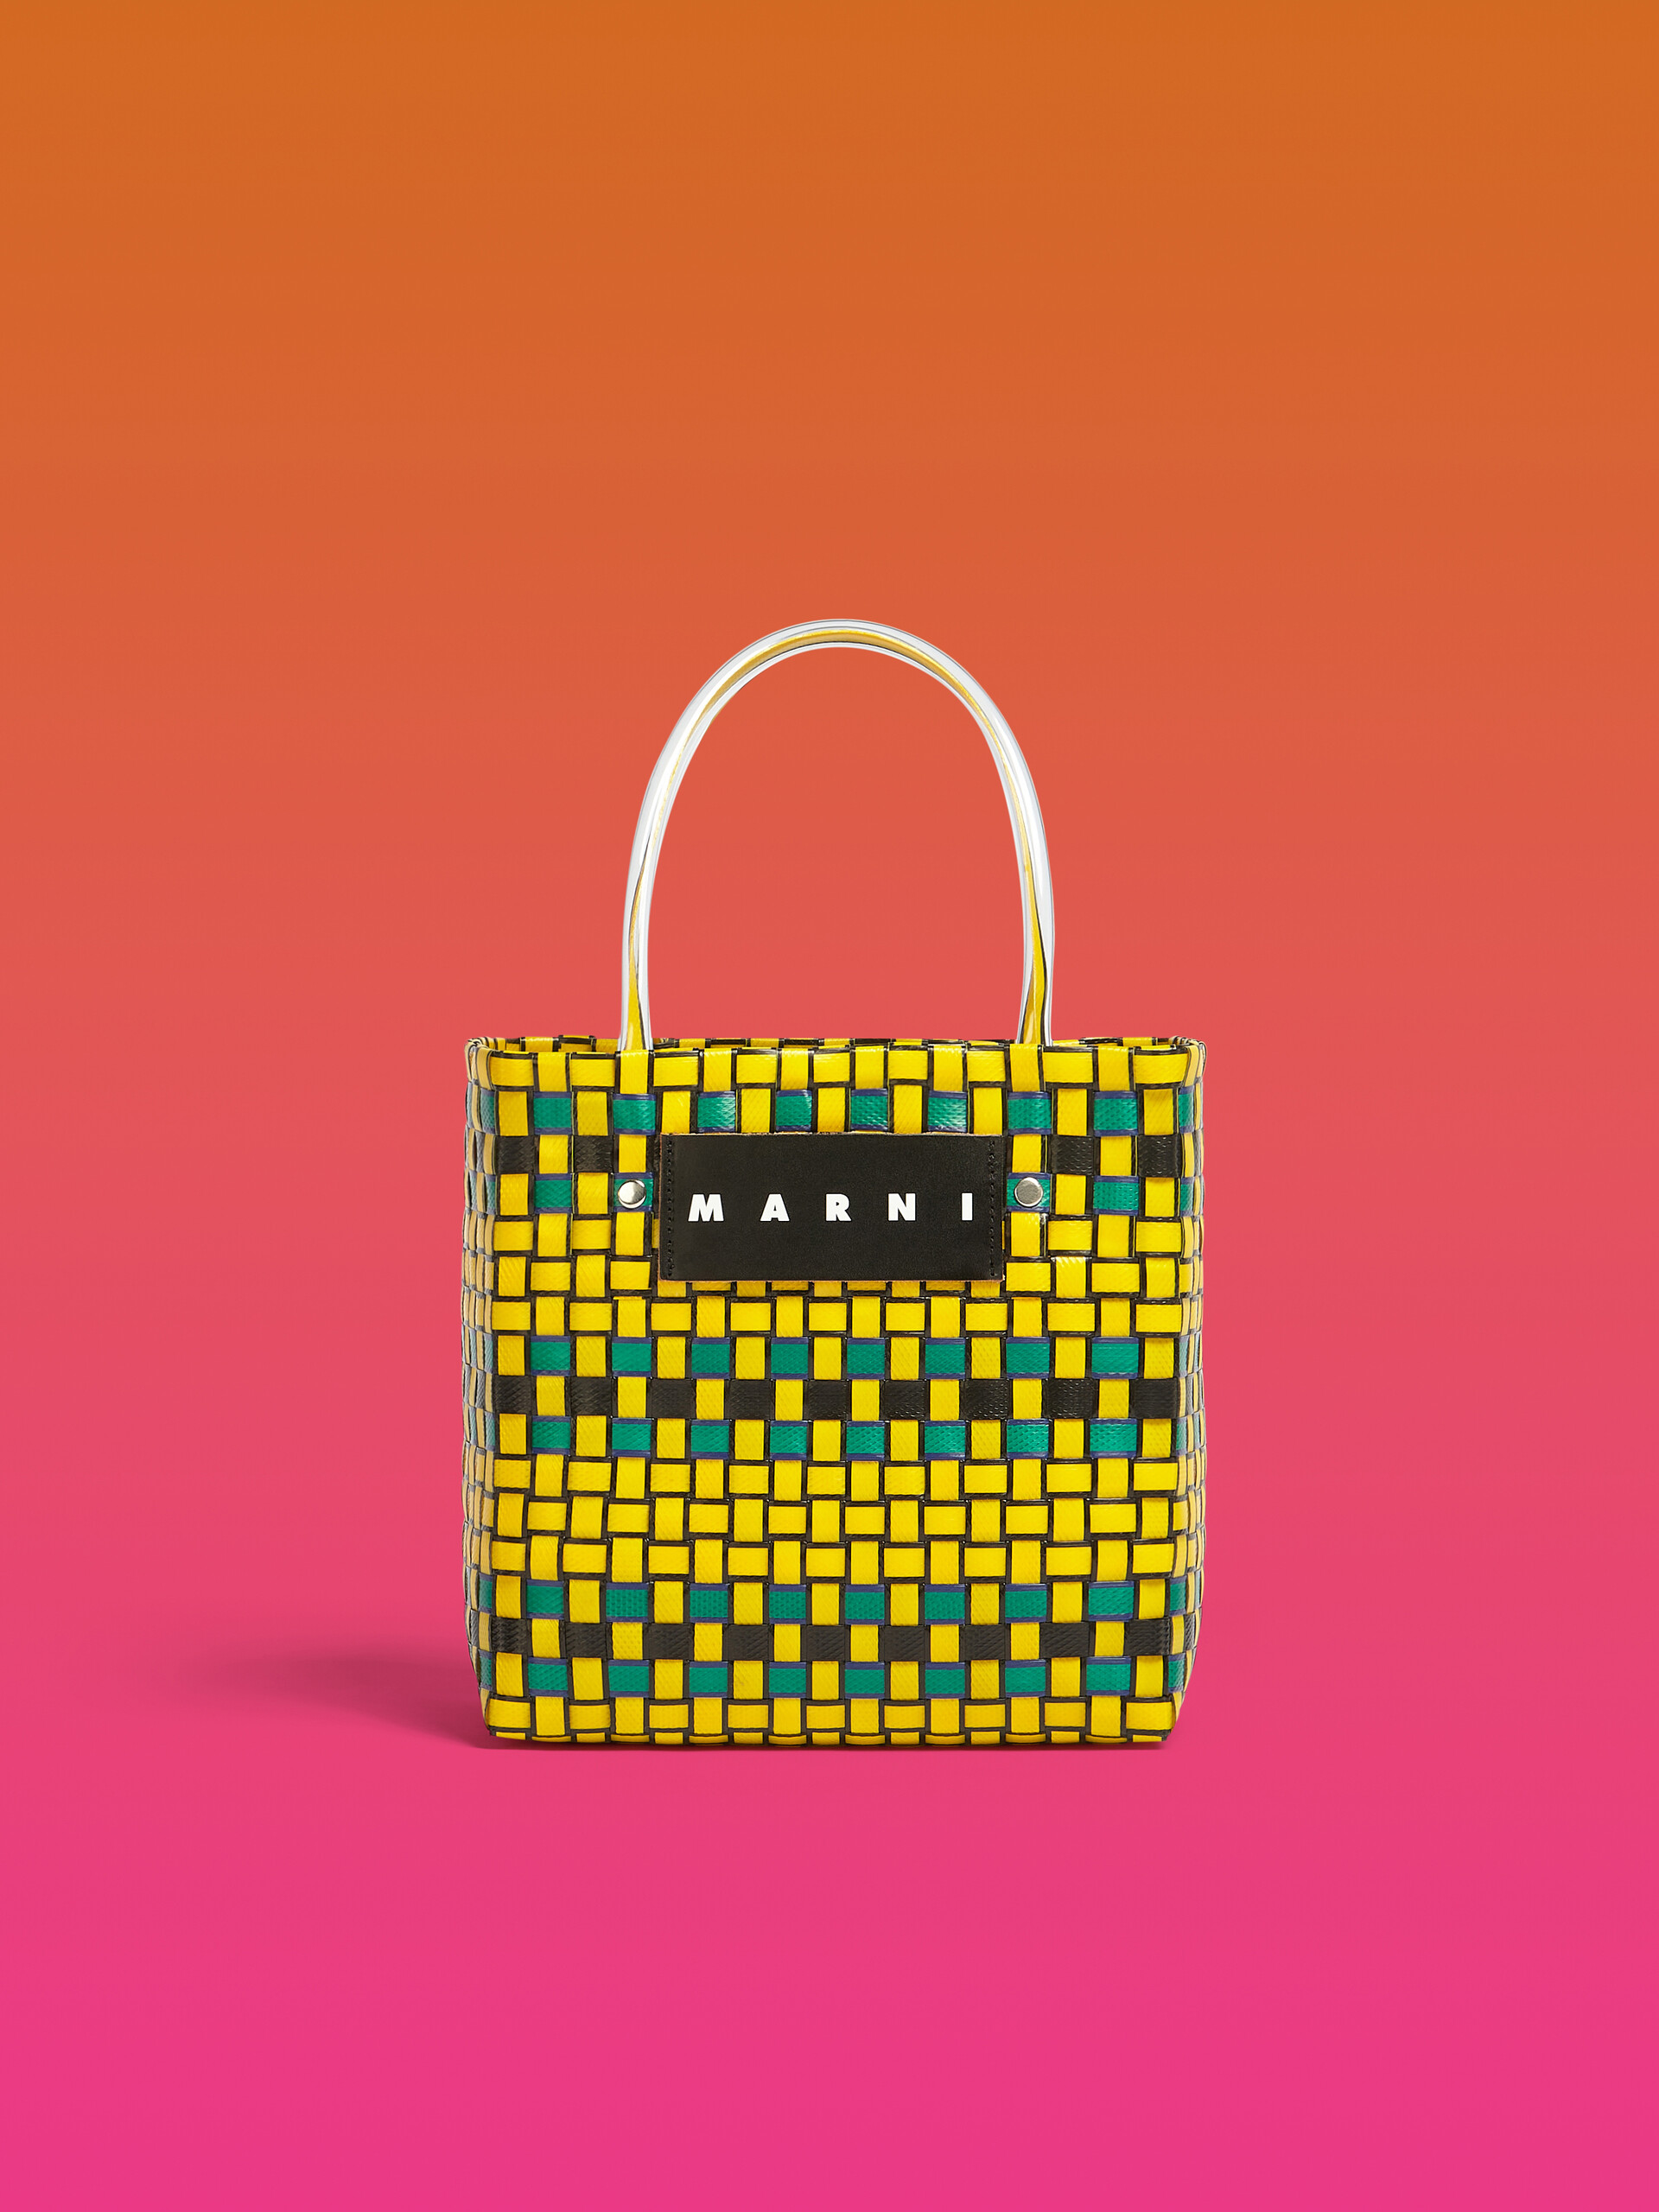 MARNI MARKET shopping bag in yellow polypropylene - Bags - Image 1